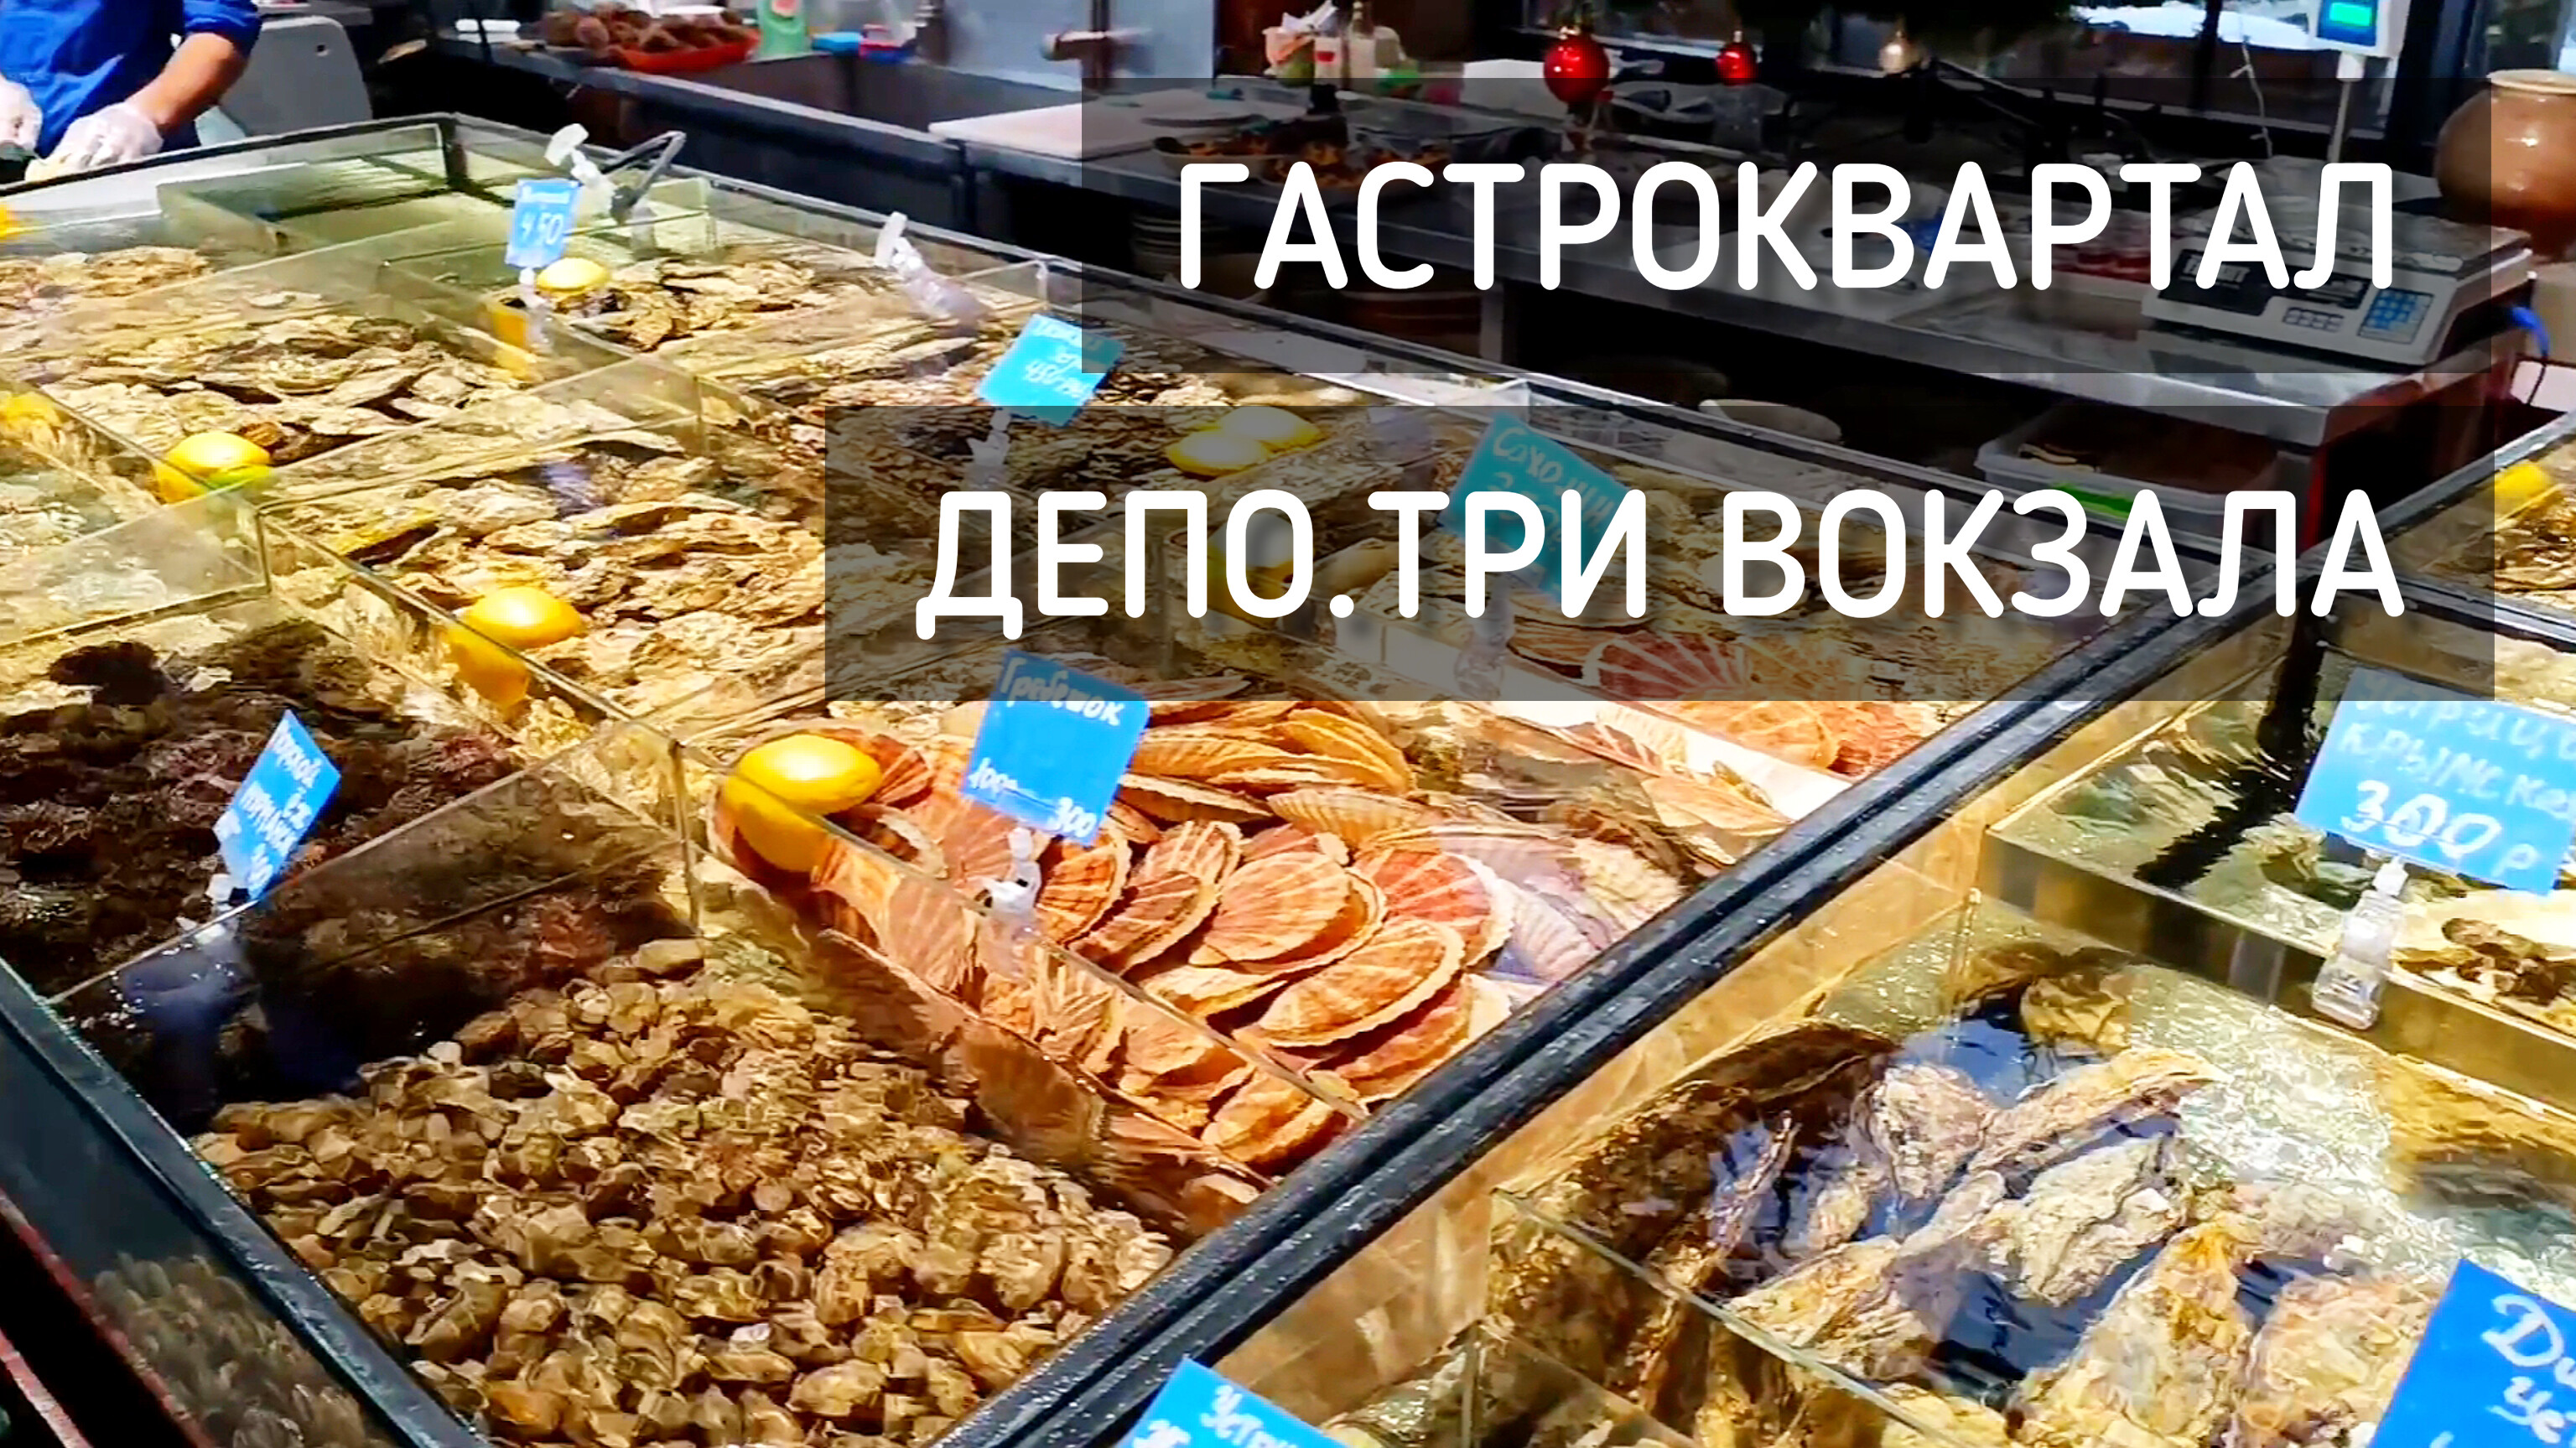 Гастроквартал. ДЕПО - Три Вокзала. Много еды. Ярмарка / A lot of food #москва #депо #еда #вкусно